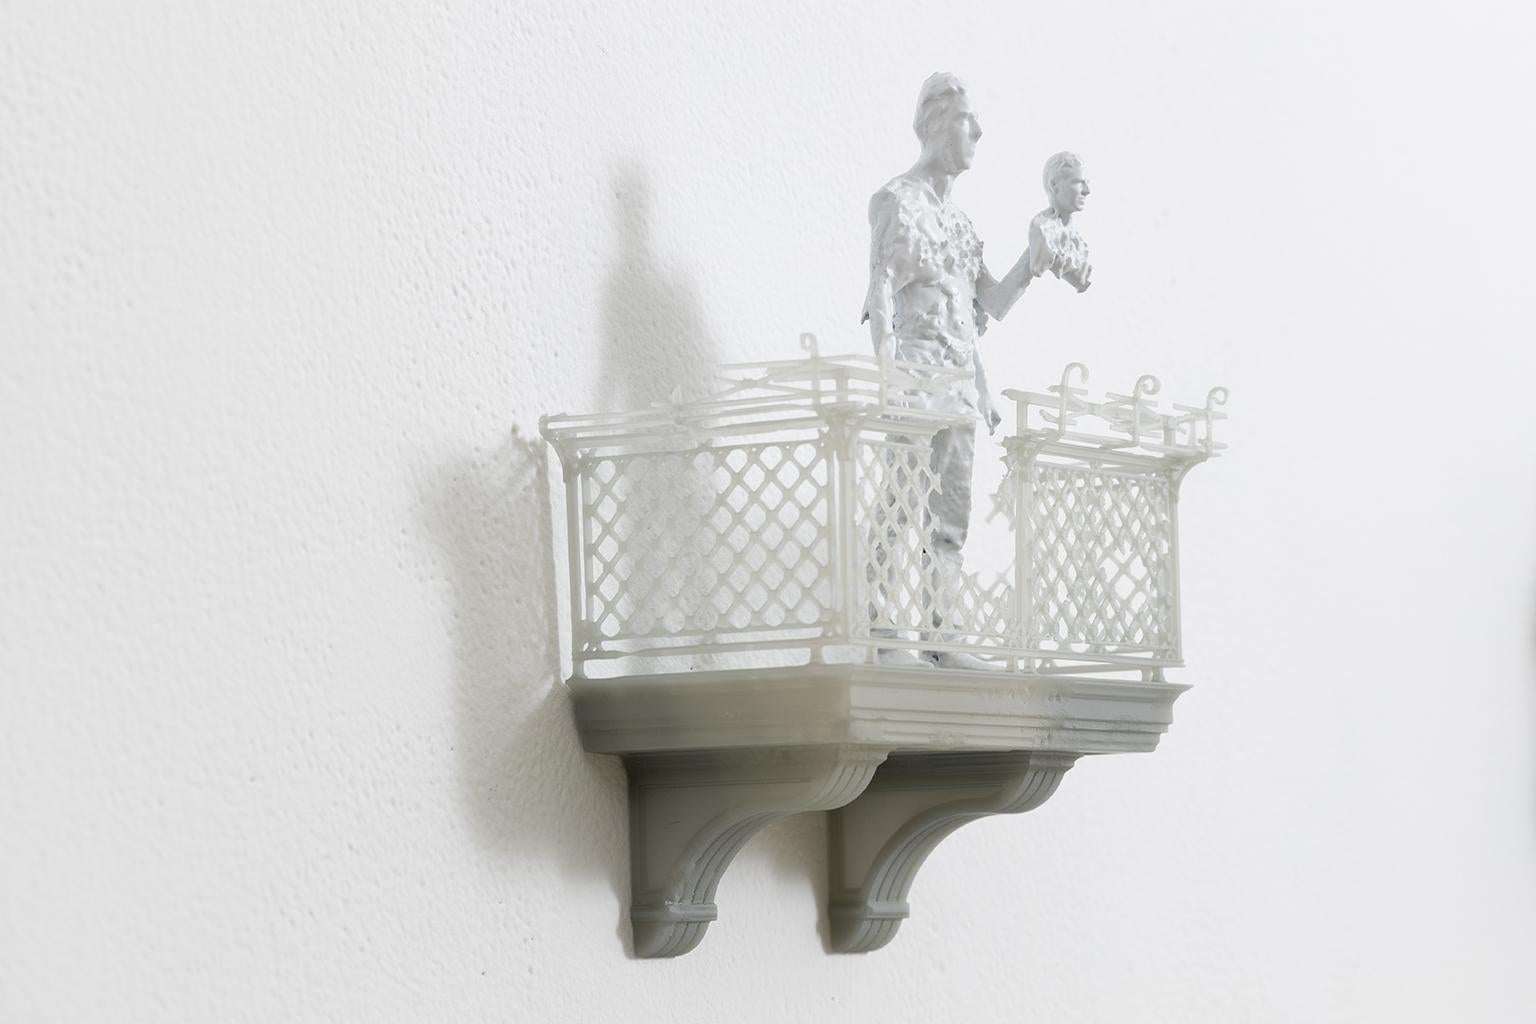 Doum - Contemporary Sculpture by Guillaume Lachapelle